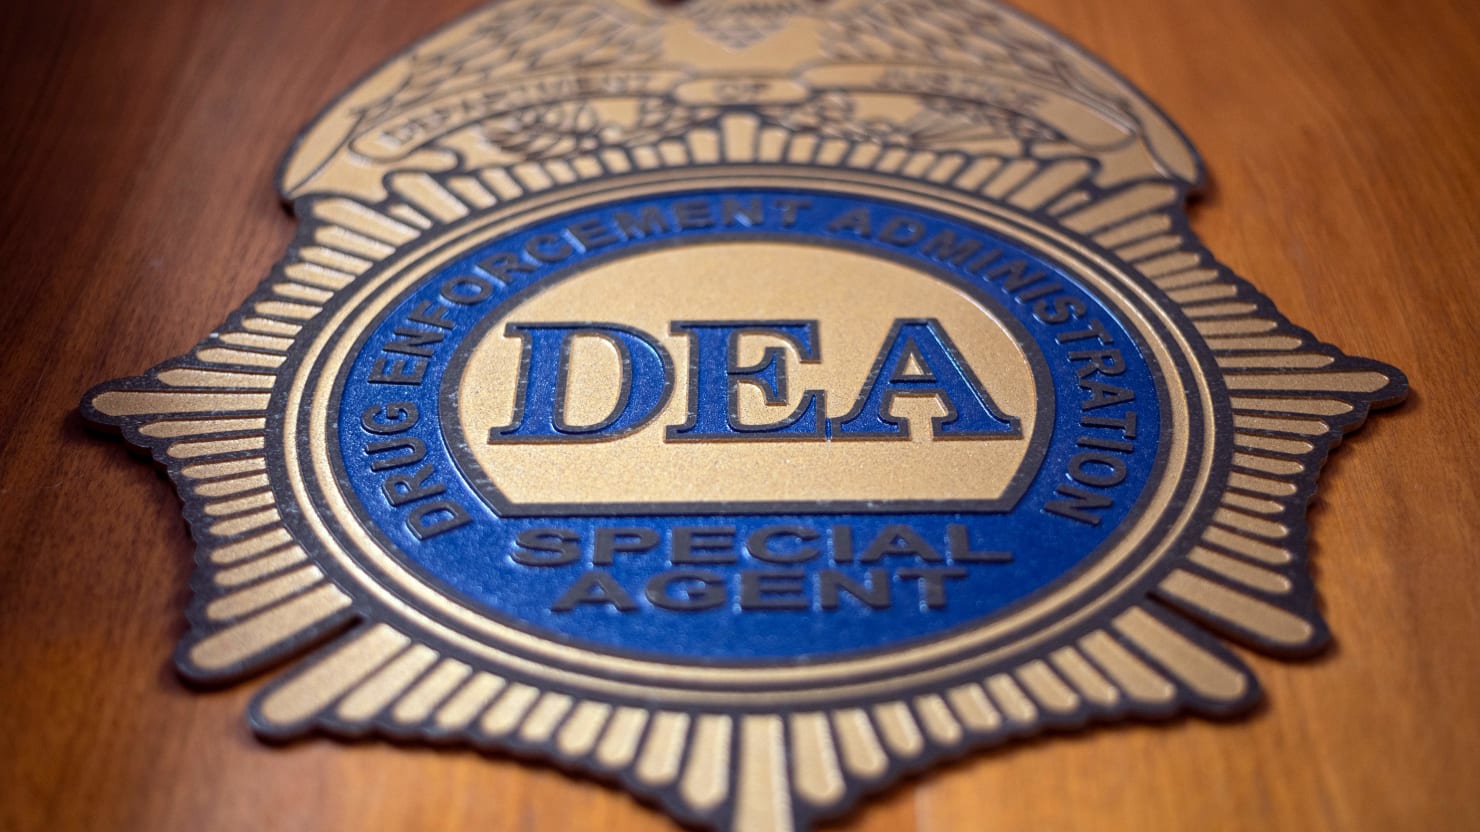 Un agent tordu de la DEA a vendu Intel à des avocats de la défense, selon le gouvernement fédéral